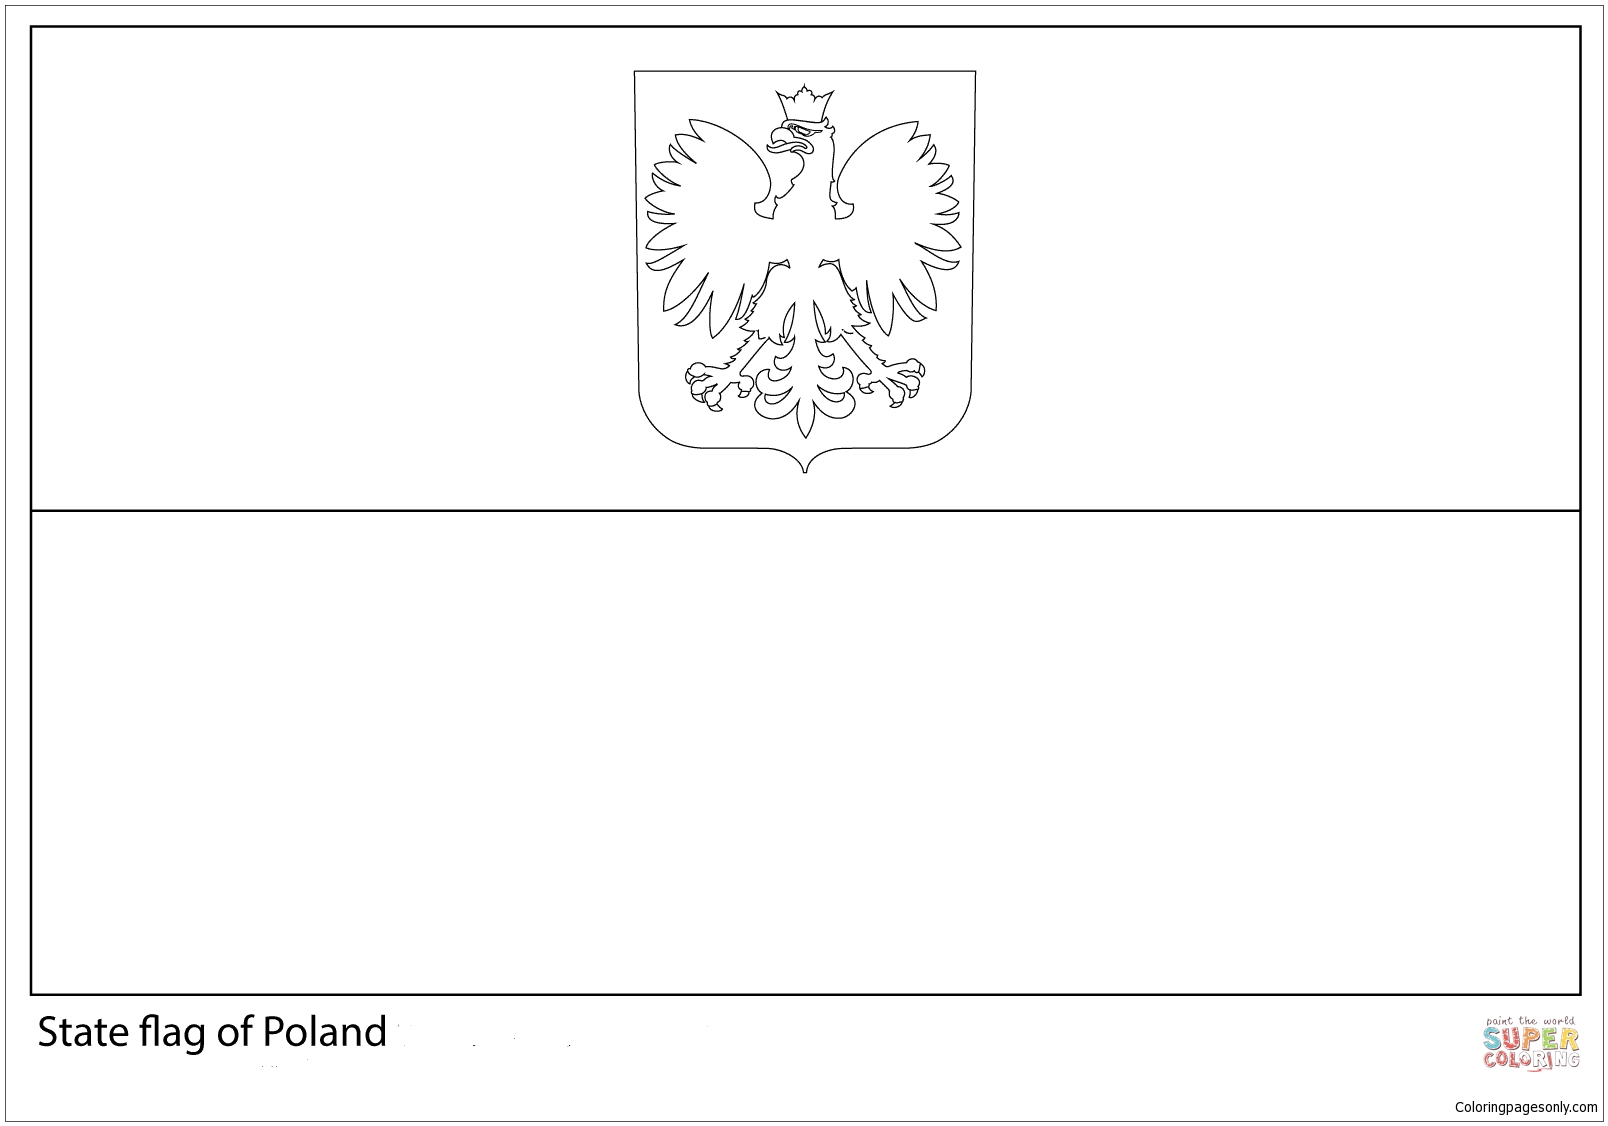 Флаг Польши-ЧМ-2018 из флагов ЧМ-2018